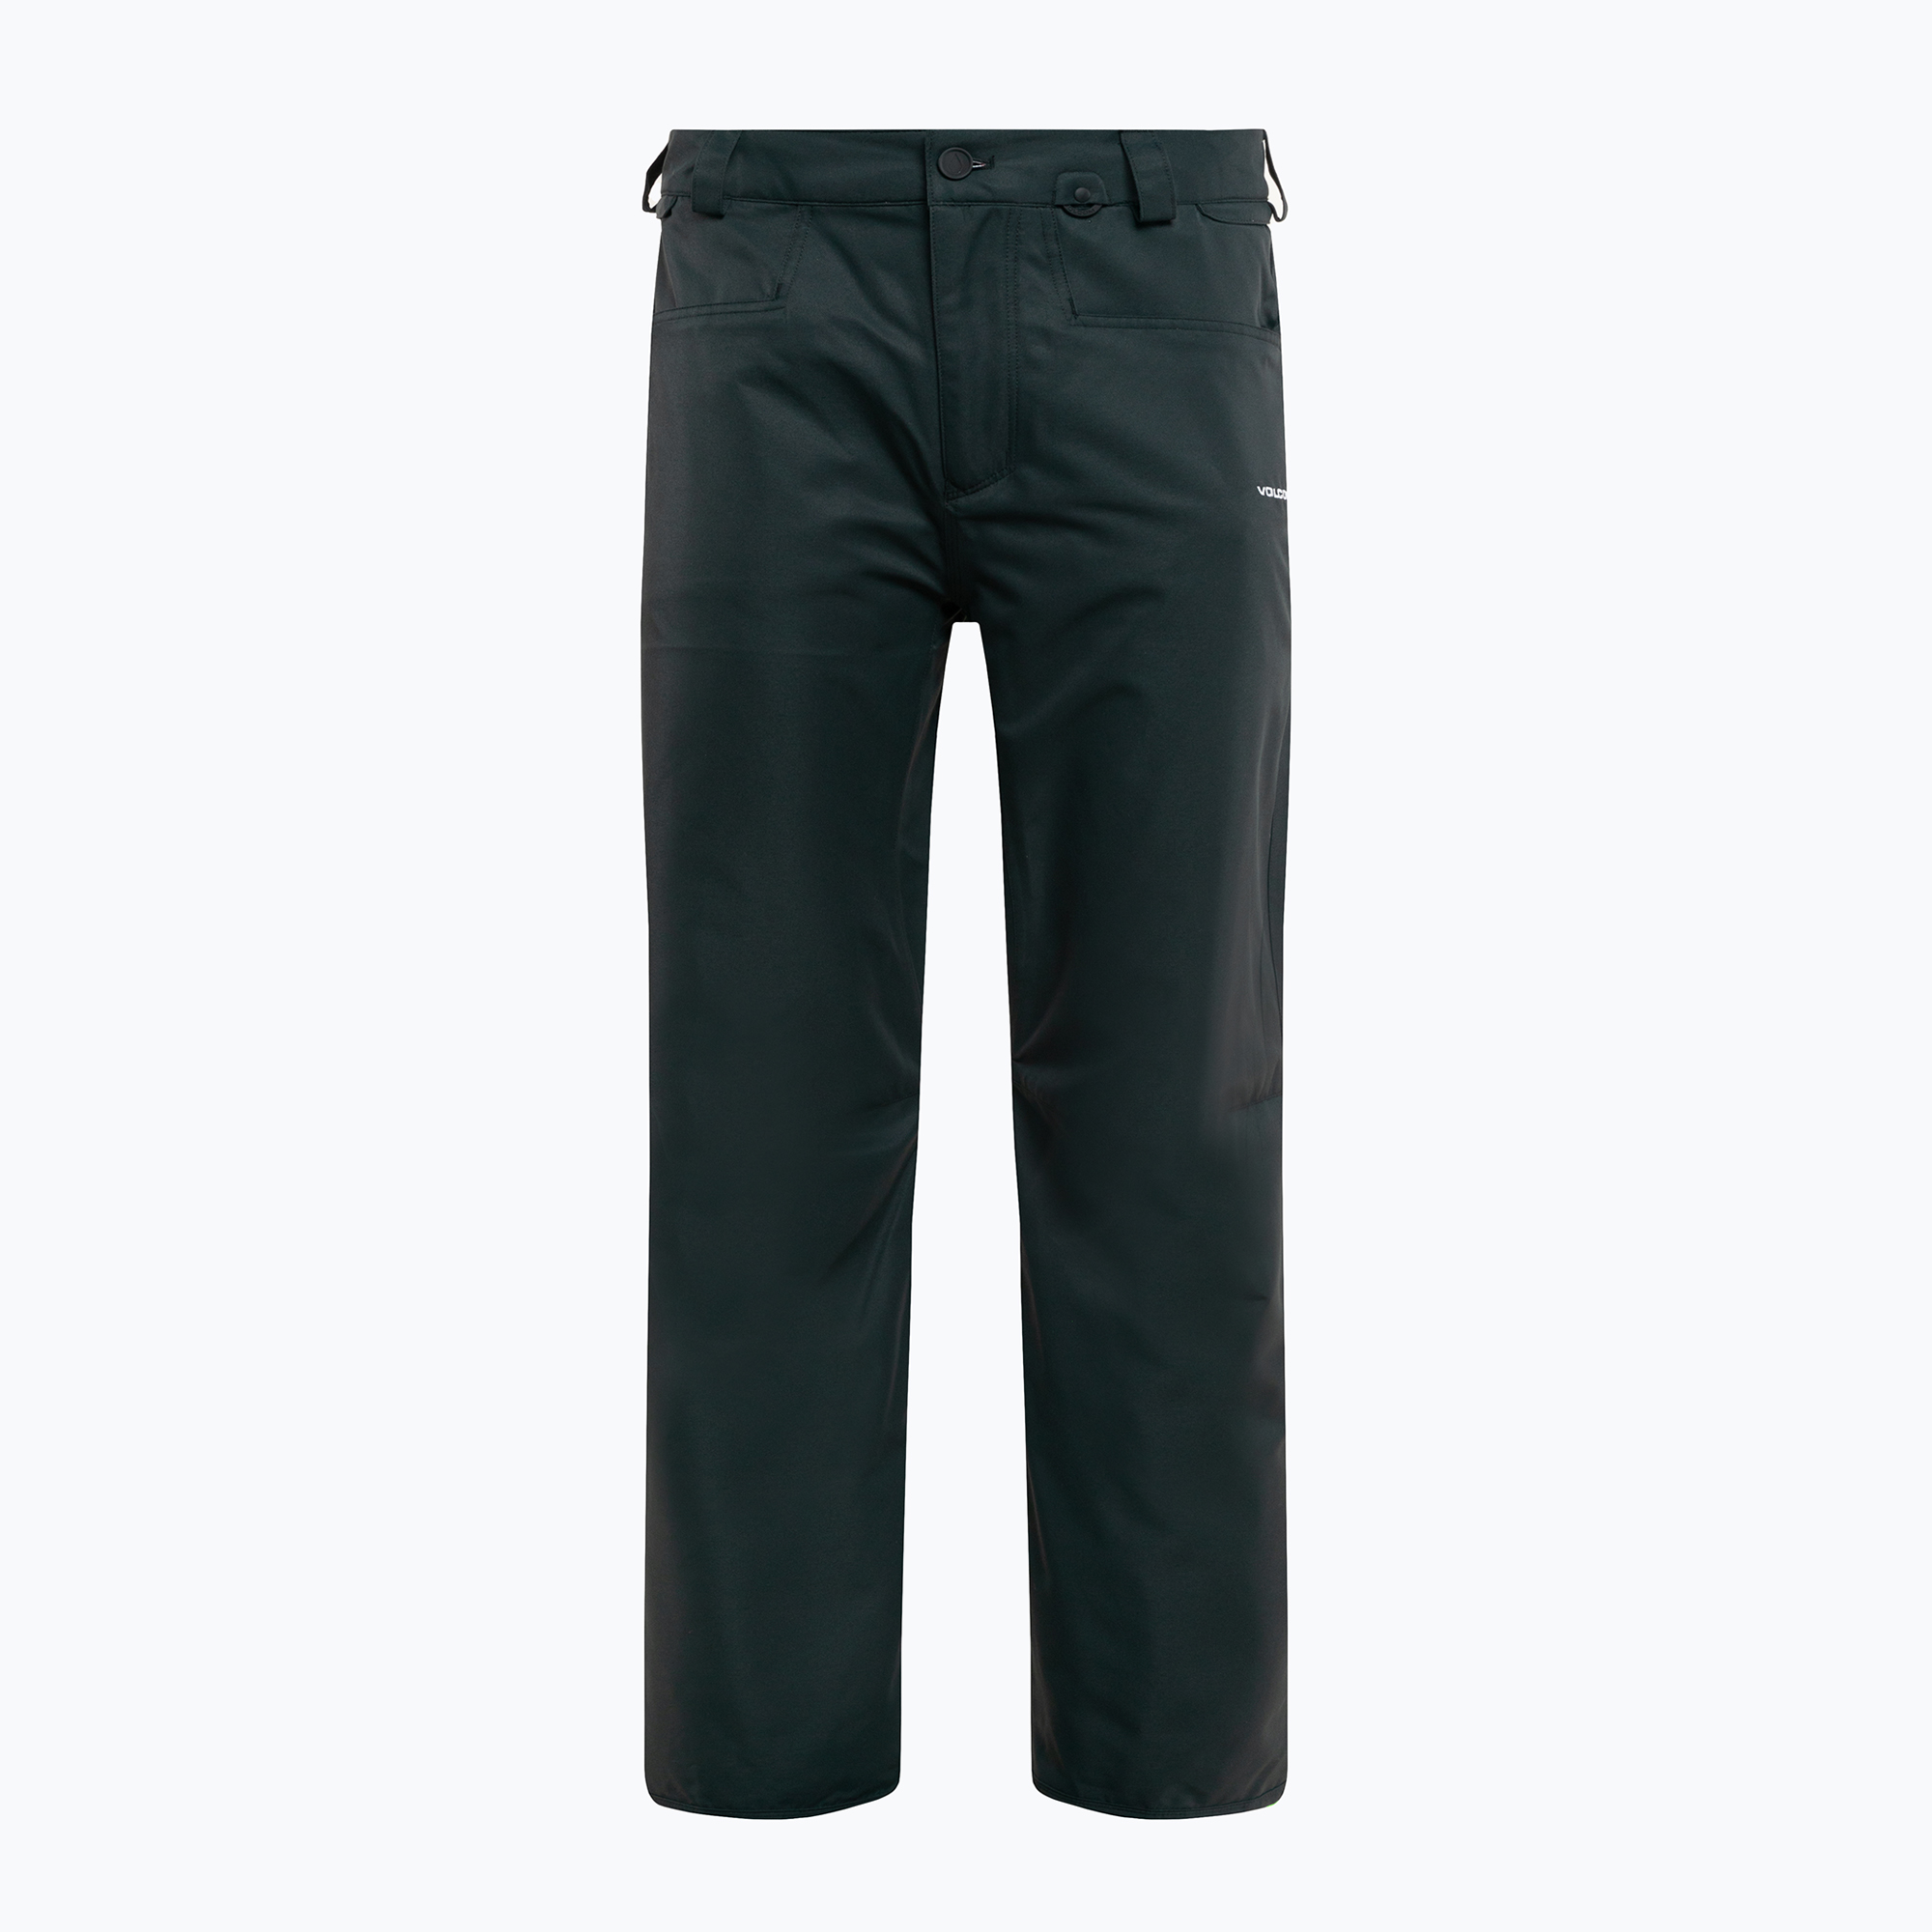 Мъжки панталон за сноуборд Volcom Carbon black G1352112-BLK